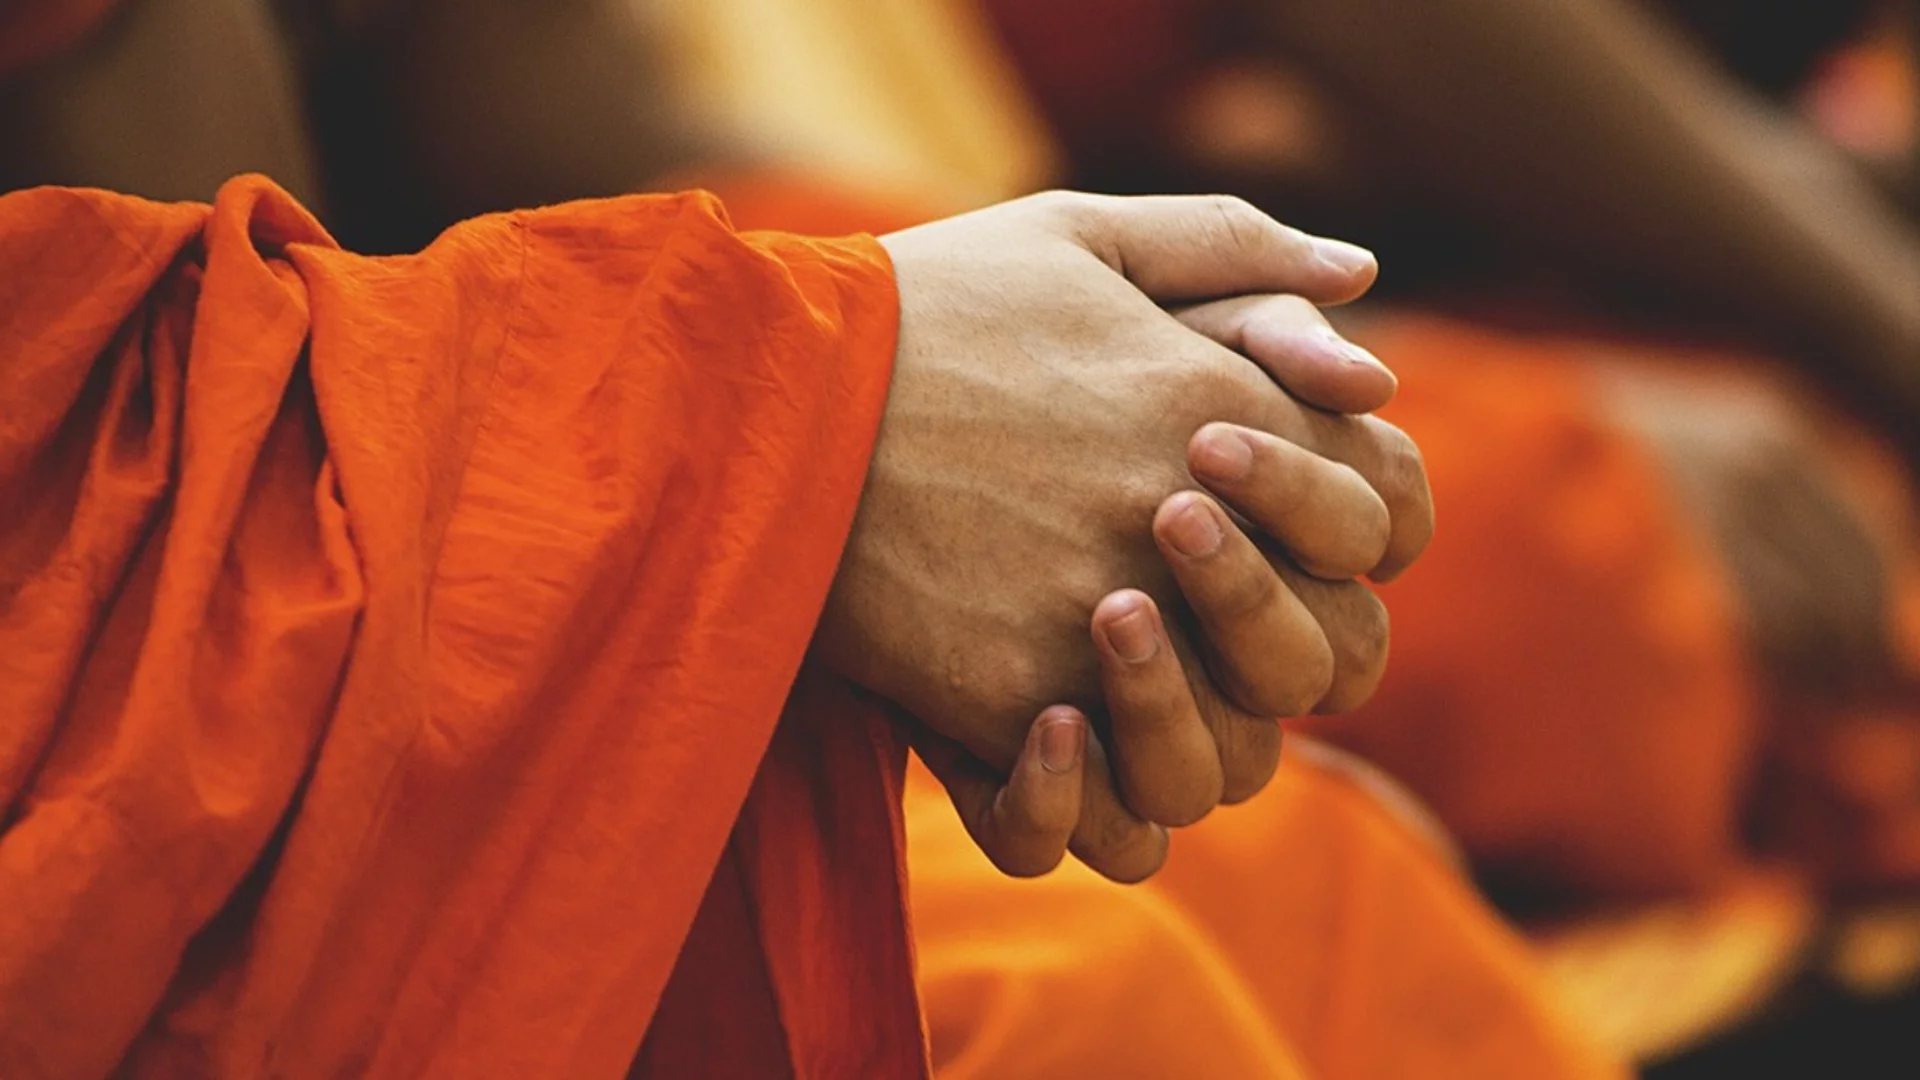 10 будистки правила, които си струва да приемете - следвайте ги и ще бъдете щастливи